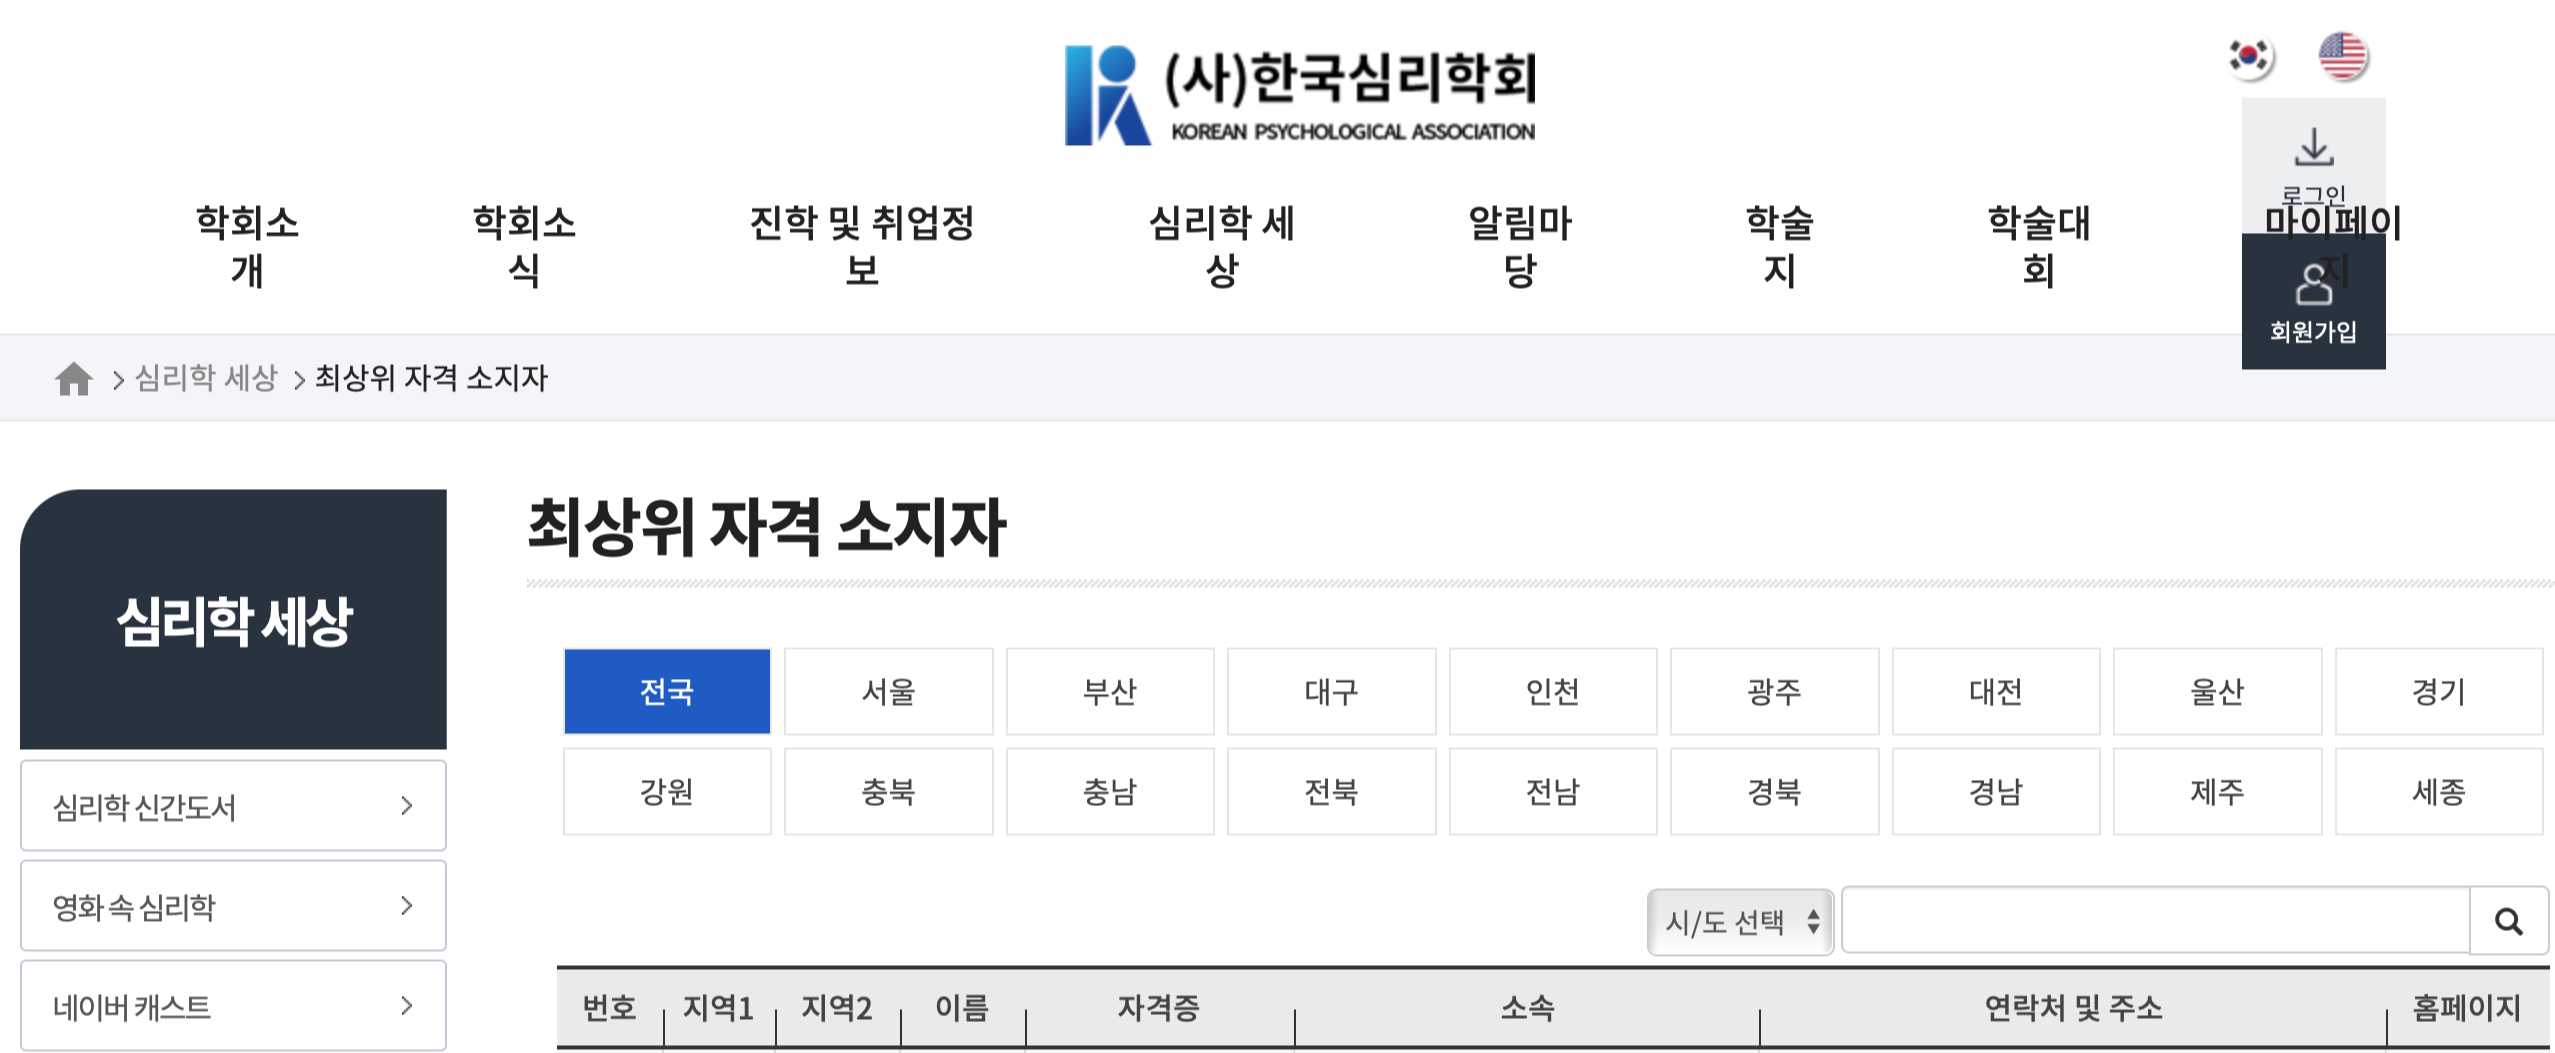 한국심리학회 홈페이지